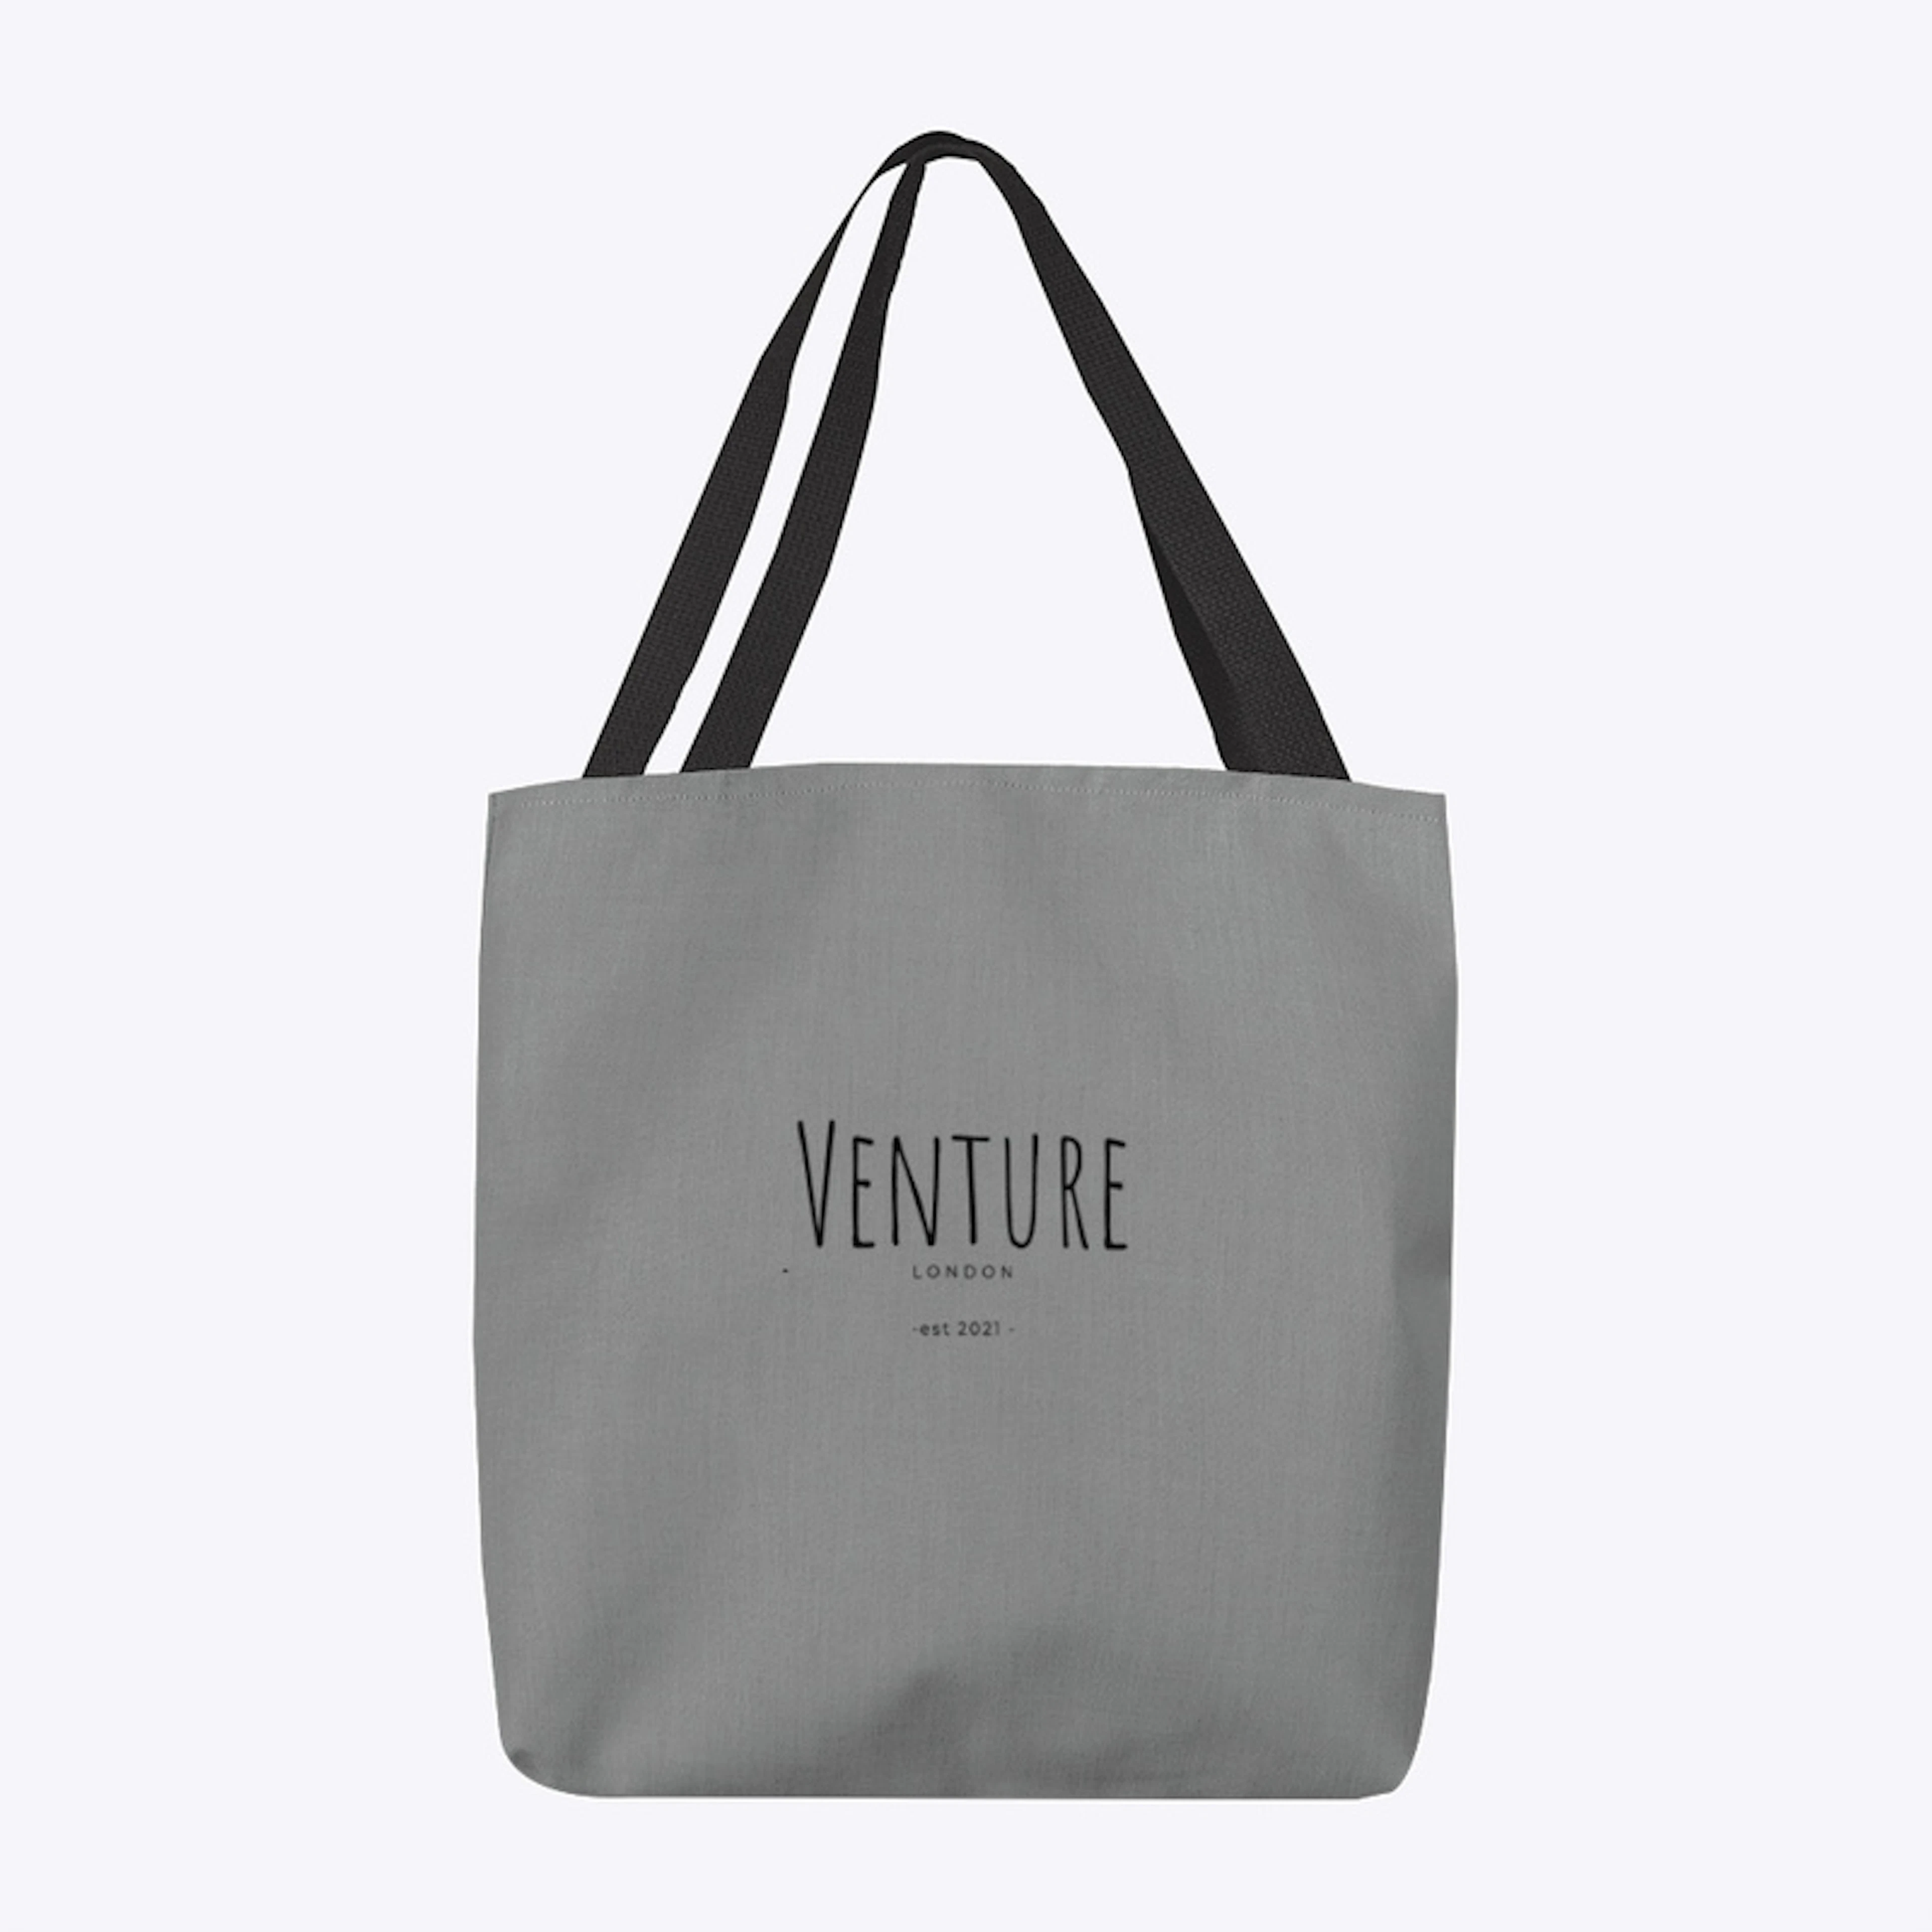 Venture Tote Bag